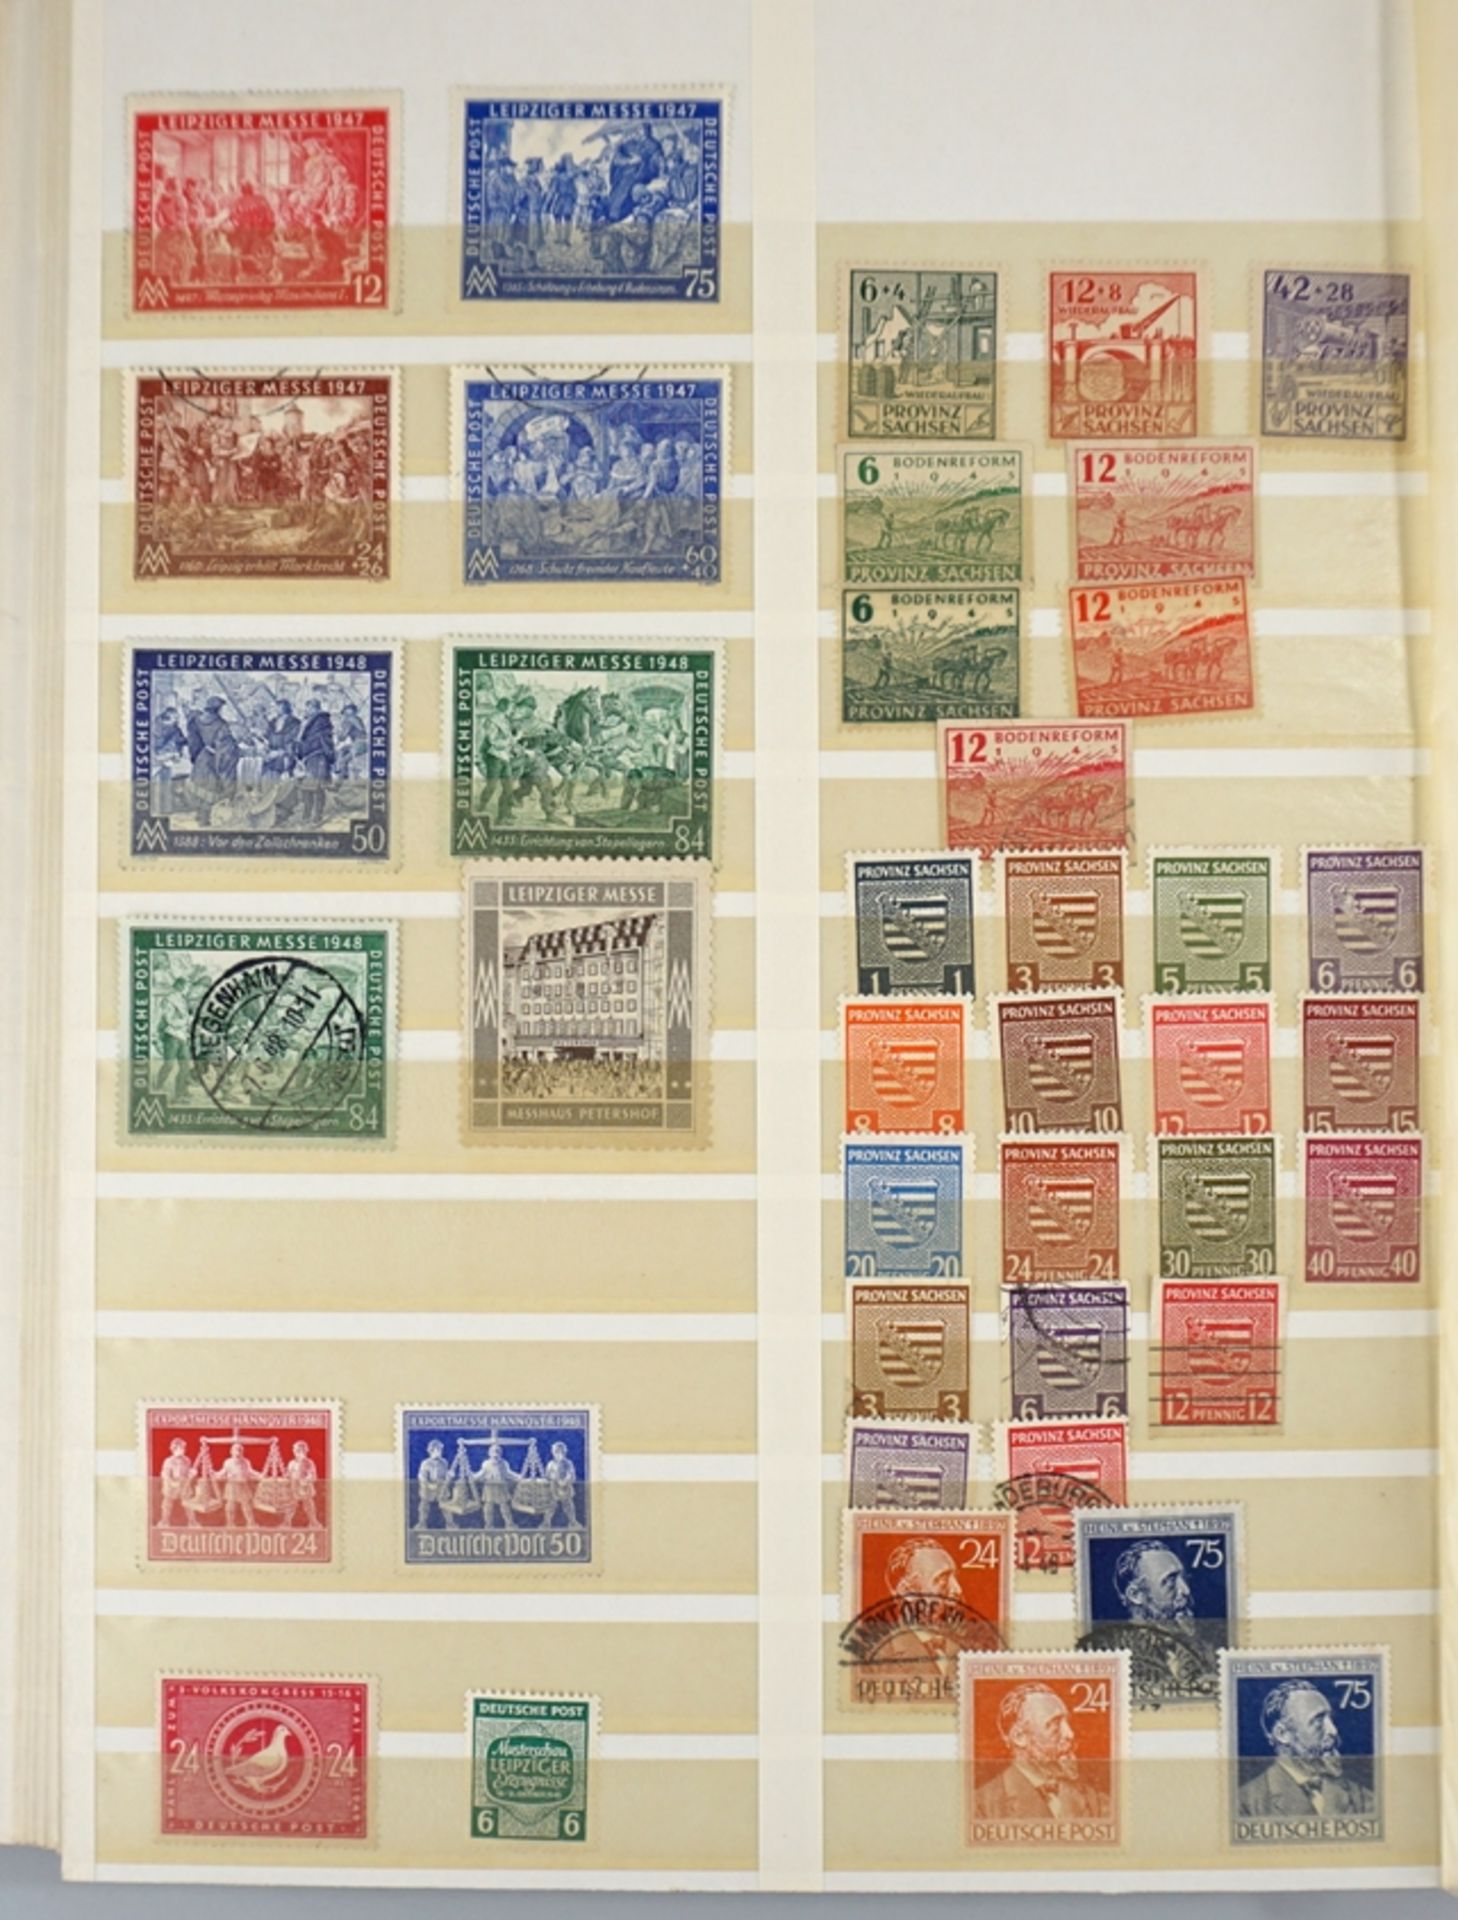 1 Album Briefmarken: Deutsches Reich, SBZ + Alliierte, BRD, Berlin West - Bild 5 aus 6